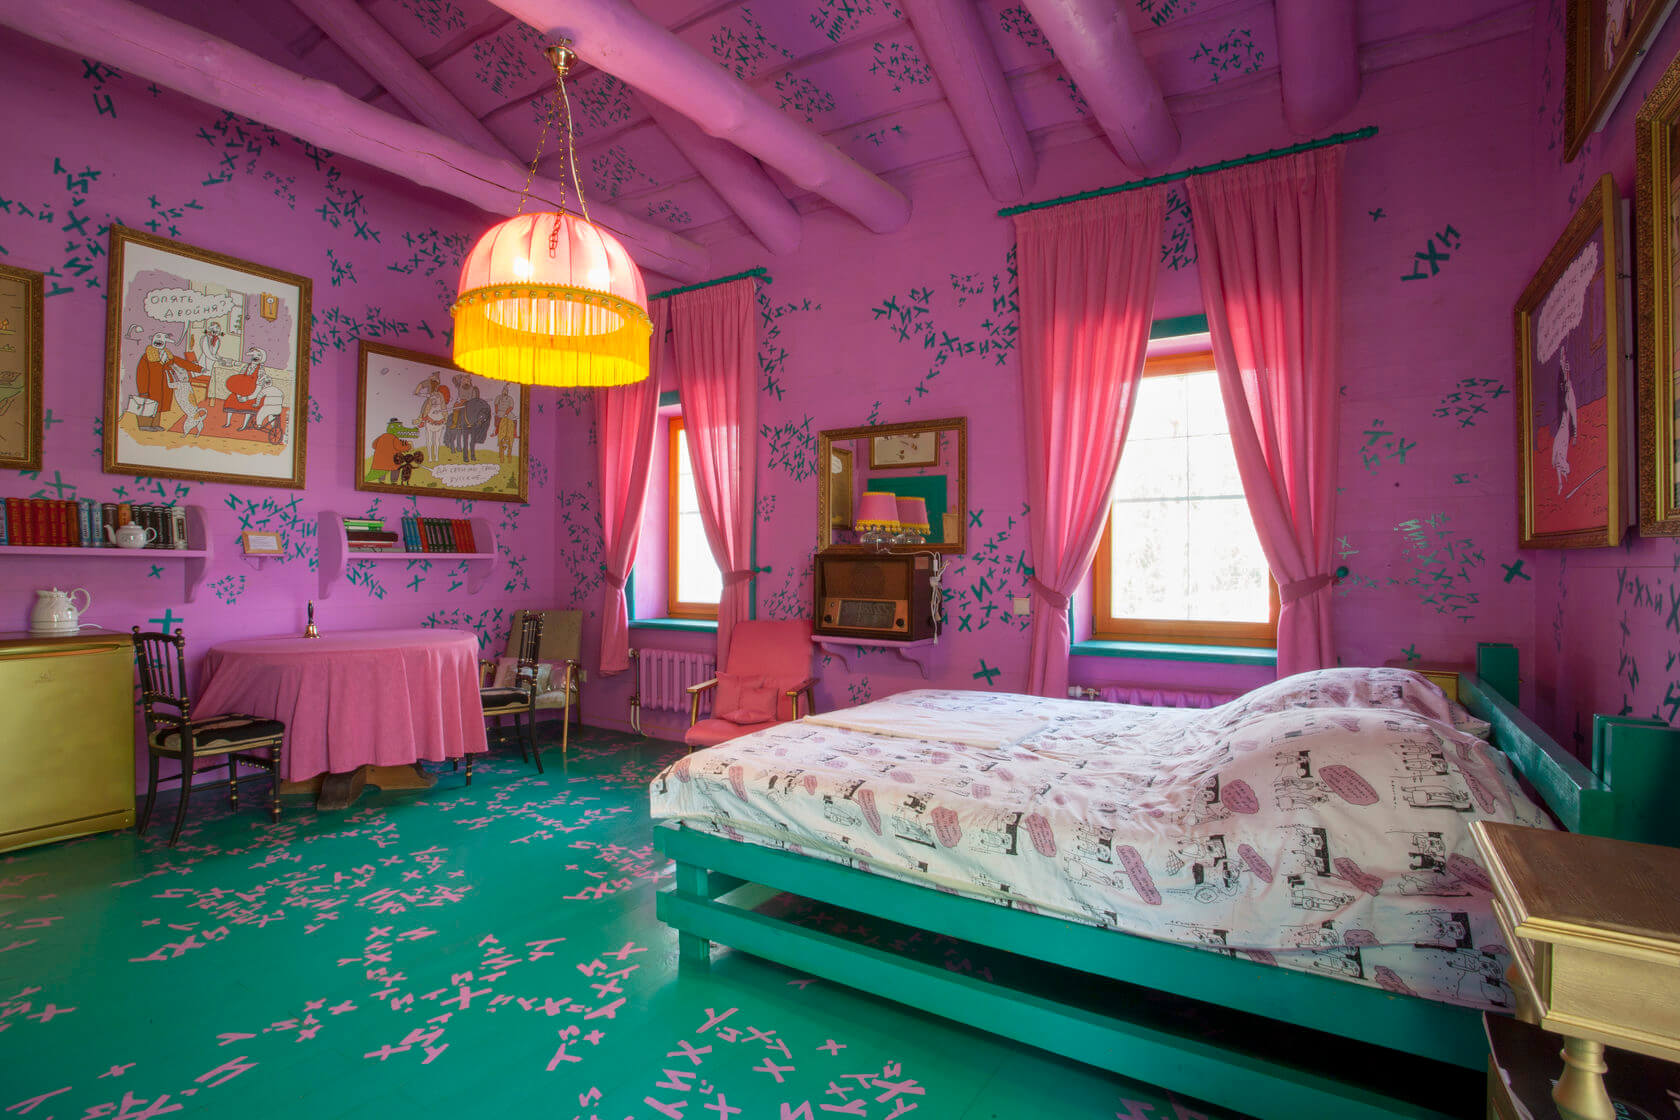 Пример интерьера - розовая комната для девочки.